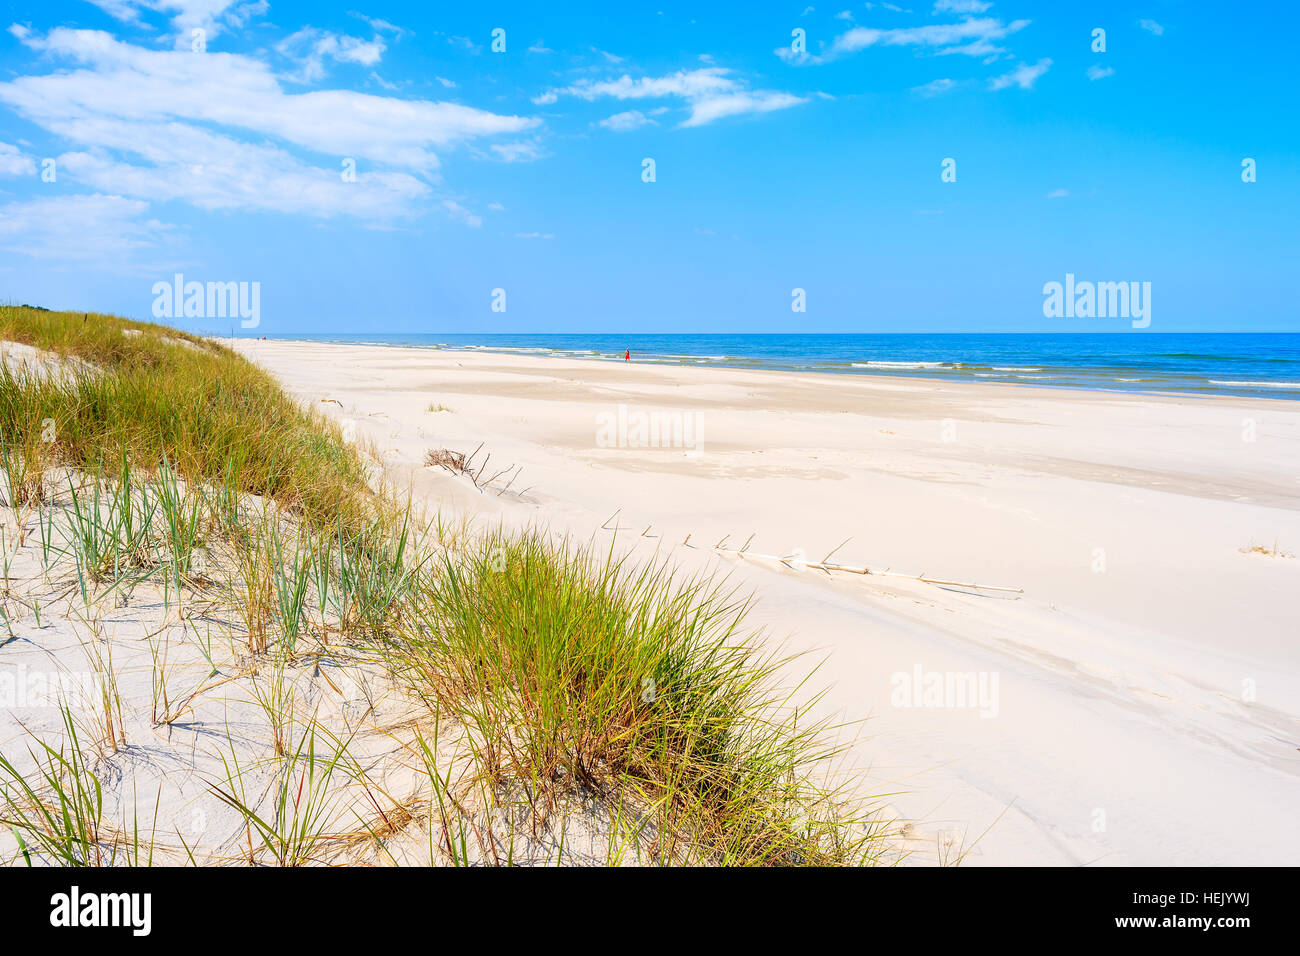 Blackpool sand dunes - Explore the Windswept Coastal Dunes – Go Guides